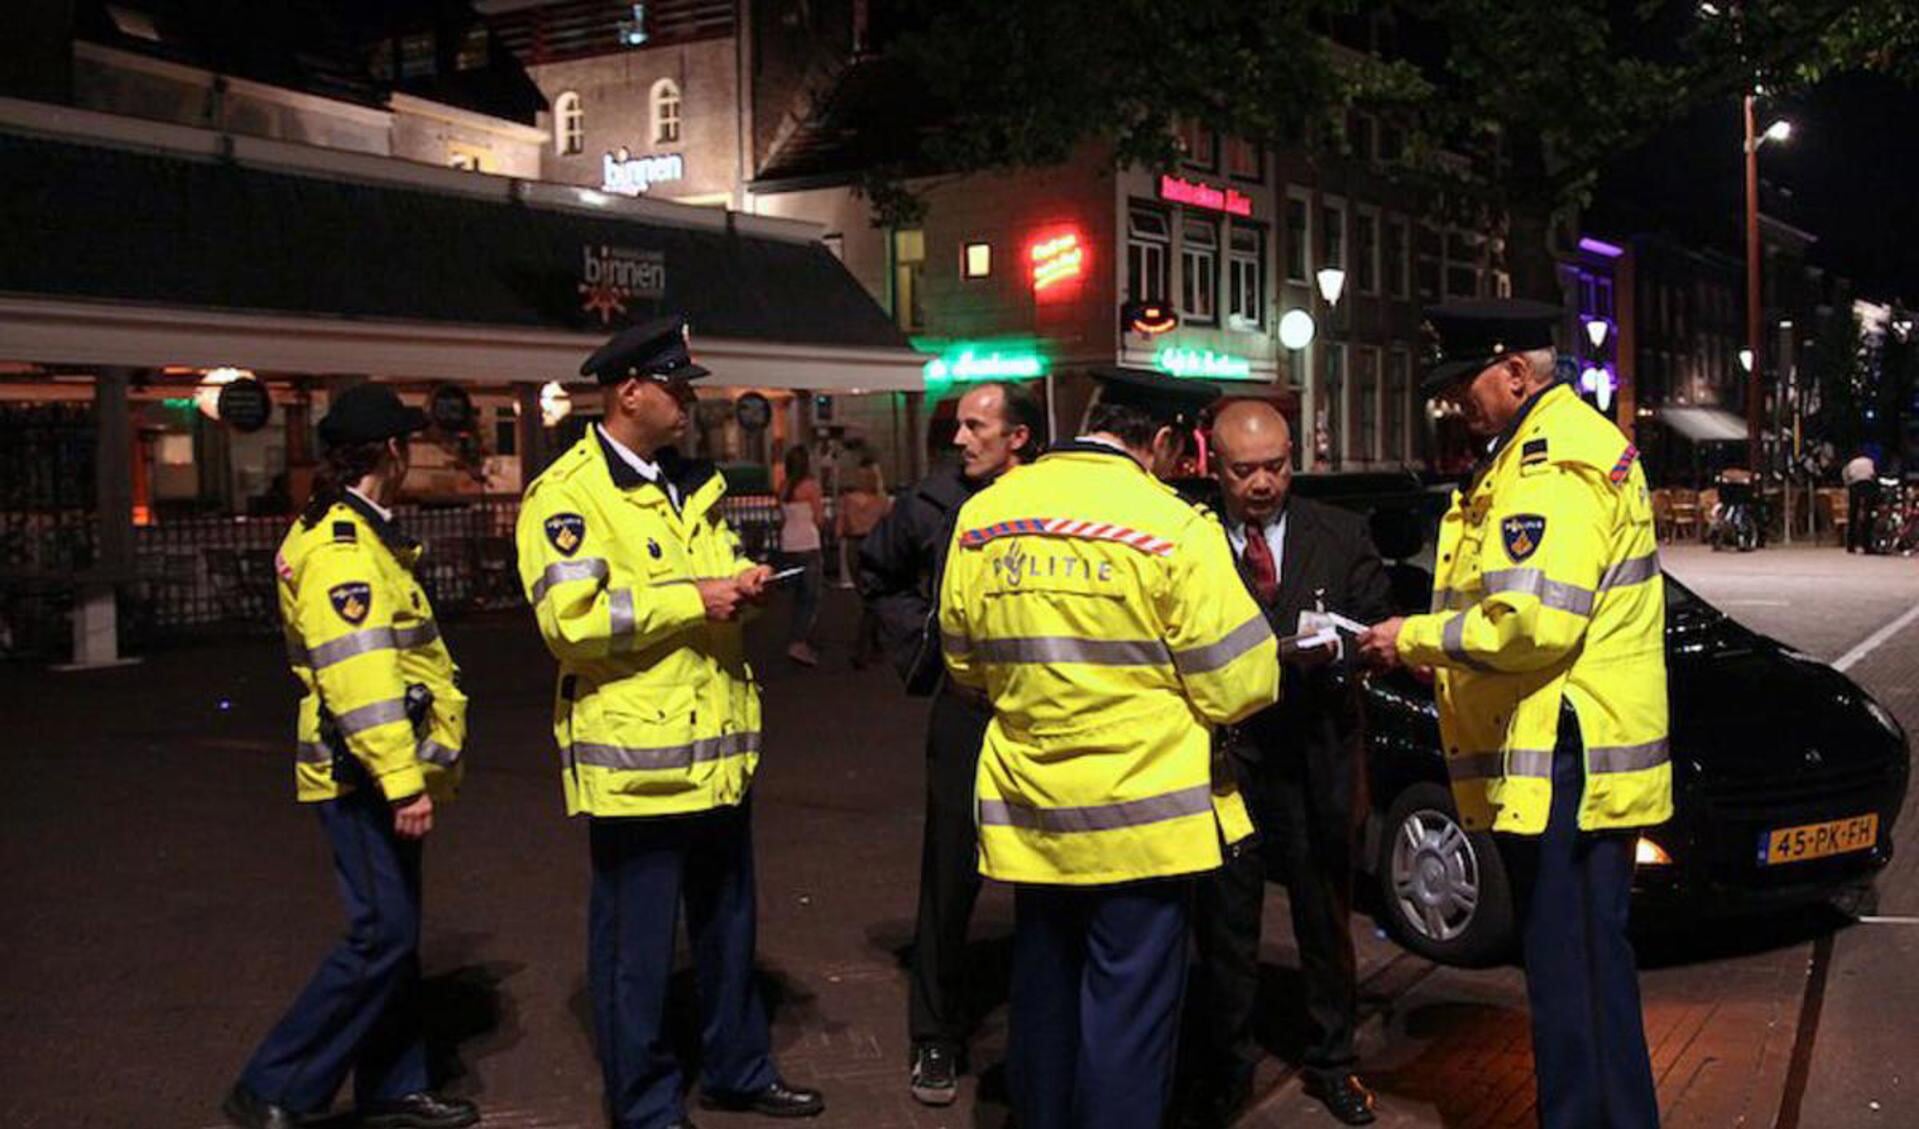 Politie en taxibranche in actie tegen de illegale taxi's bij de Hoge Brug in Breda. foto Peter Visser